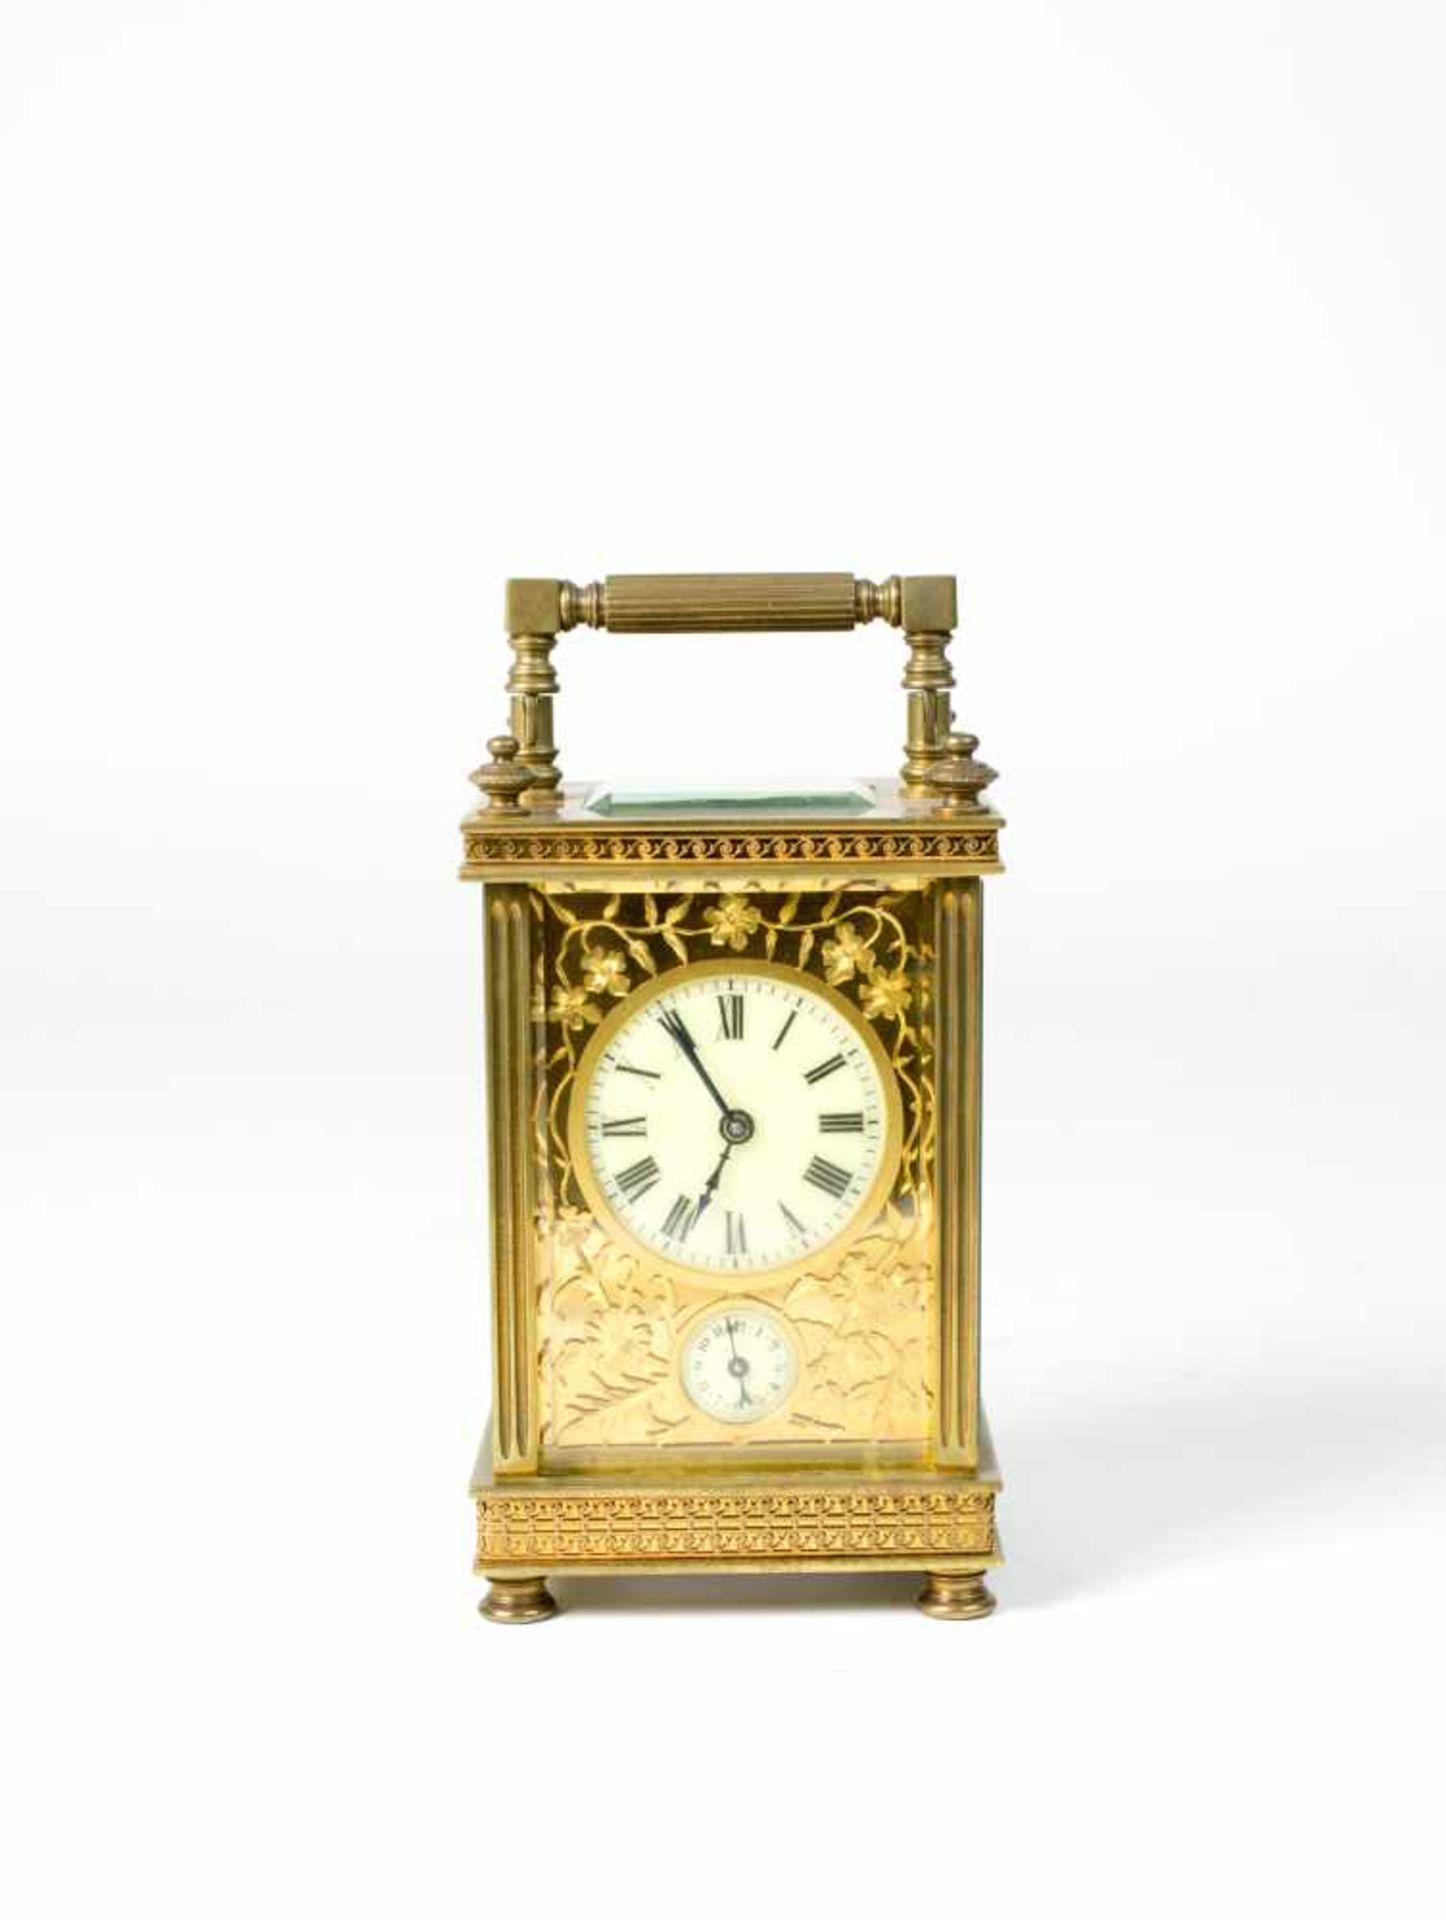 Reisewecker Um 1850, Messing, 5-seitig verglast, Höhe 14,8 cm, 8-Tage-Werk, Wecker auf Glocke,